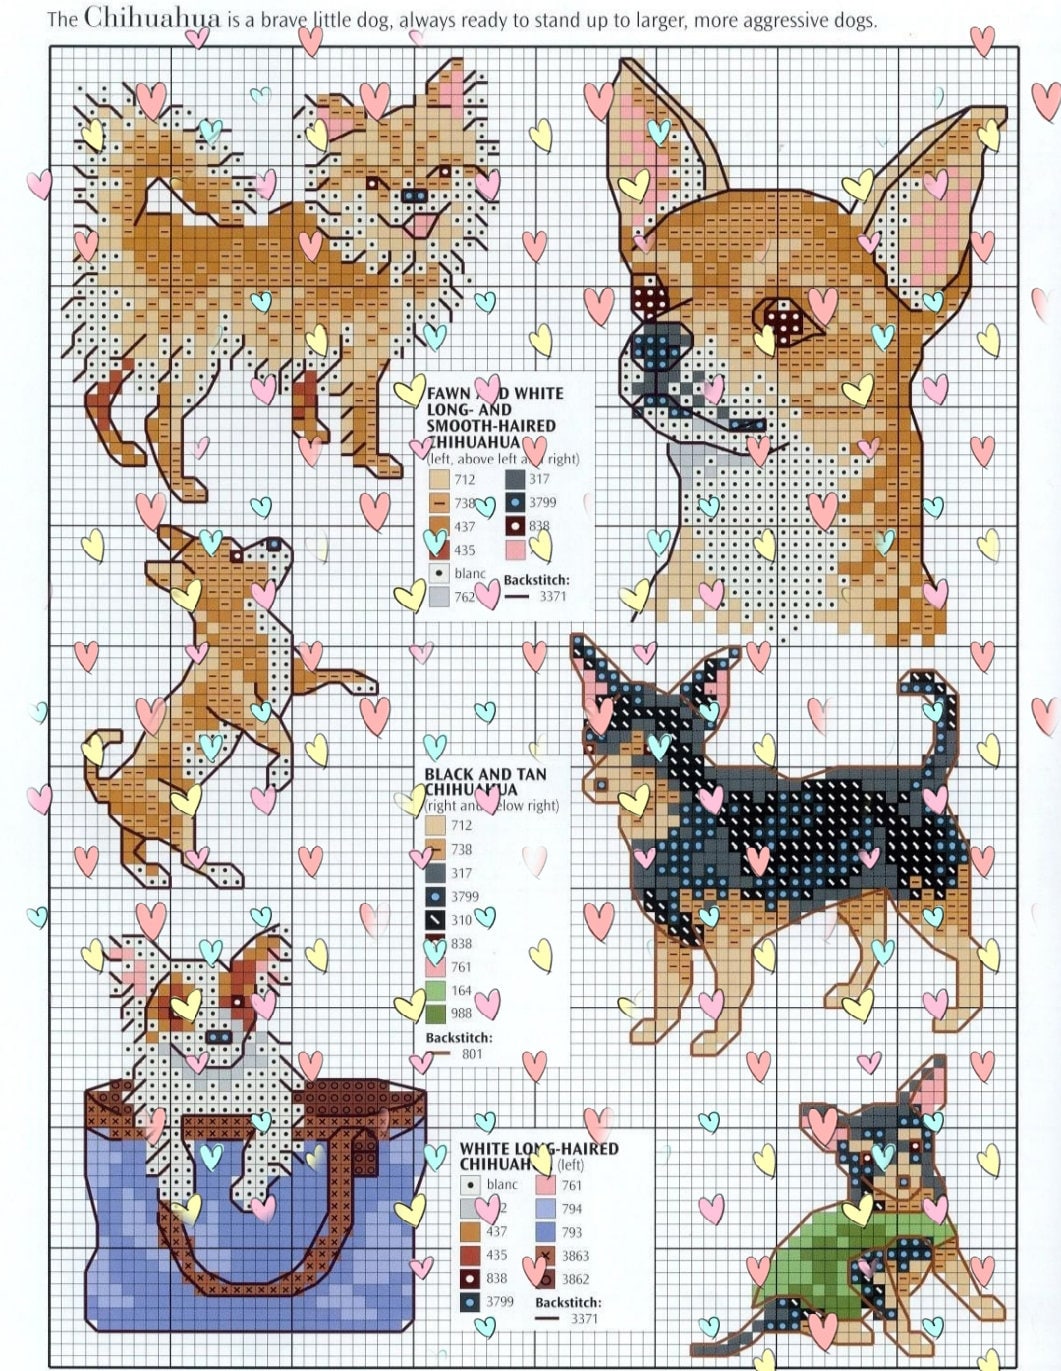 22 dogs breeds cross stitch embroidery pattern pdf | Etsy